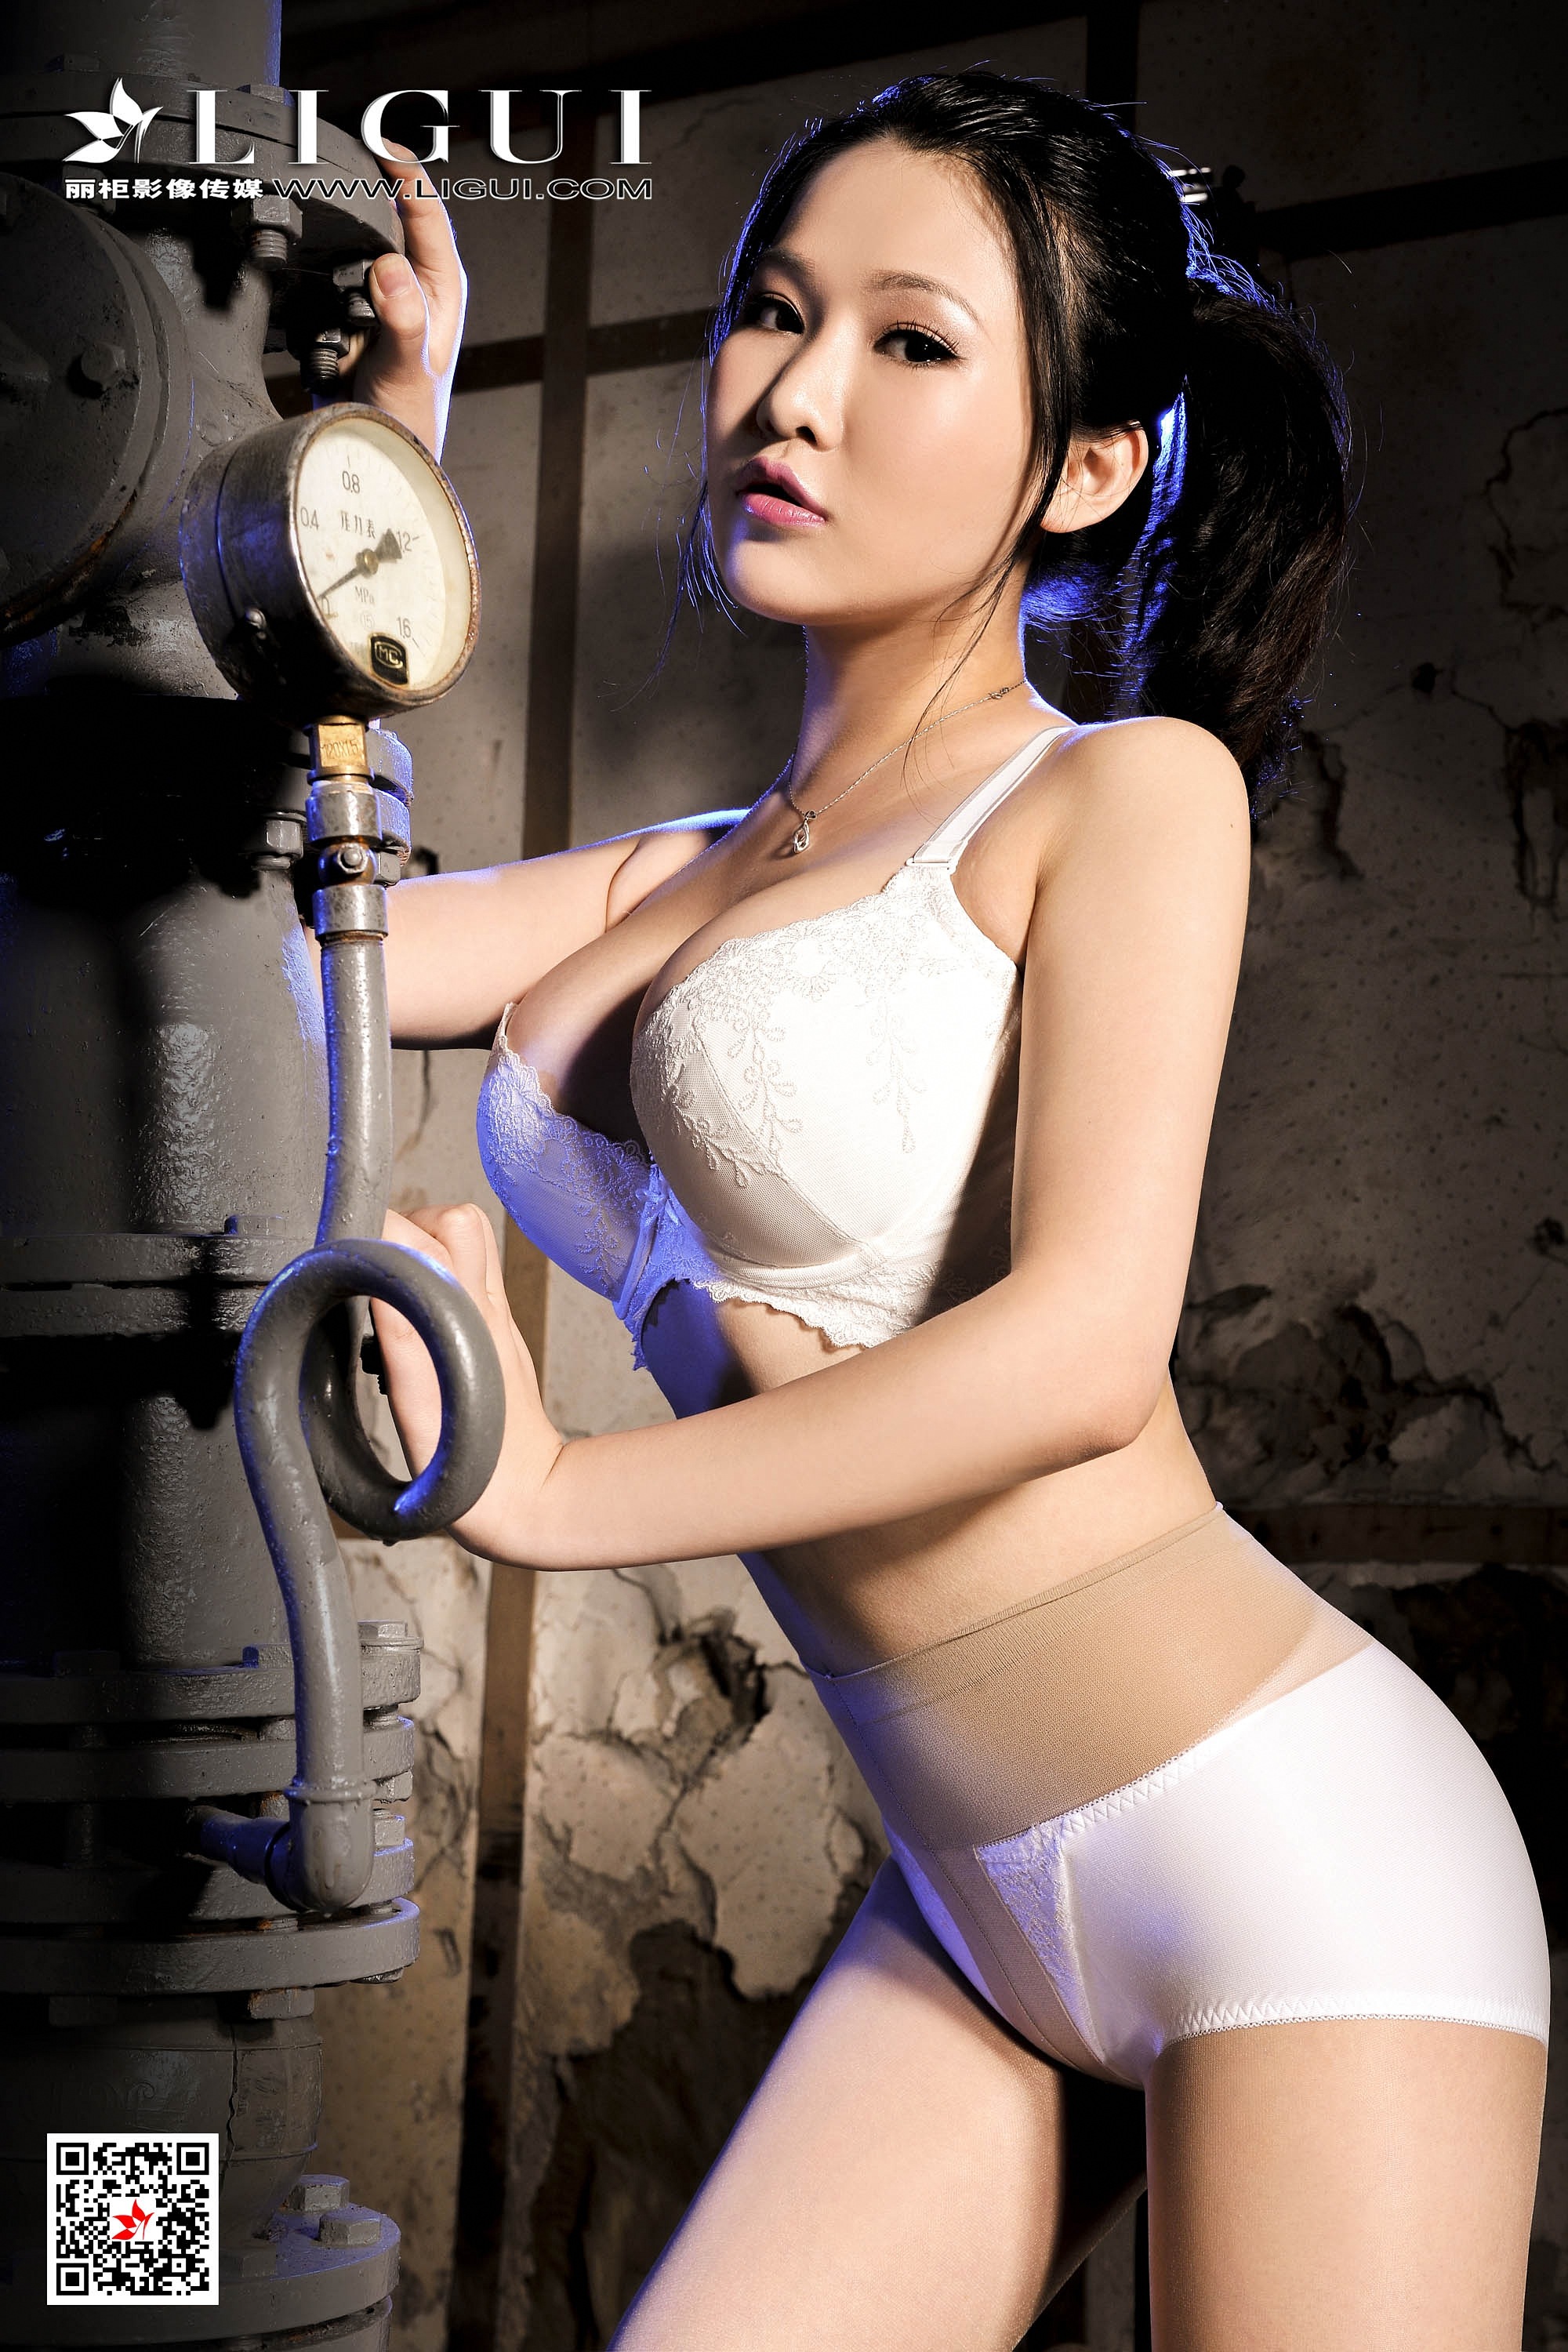 亚洲人体艺术美女吊带内衣丰乳肥臀丝袜诱惑写真